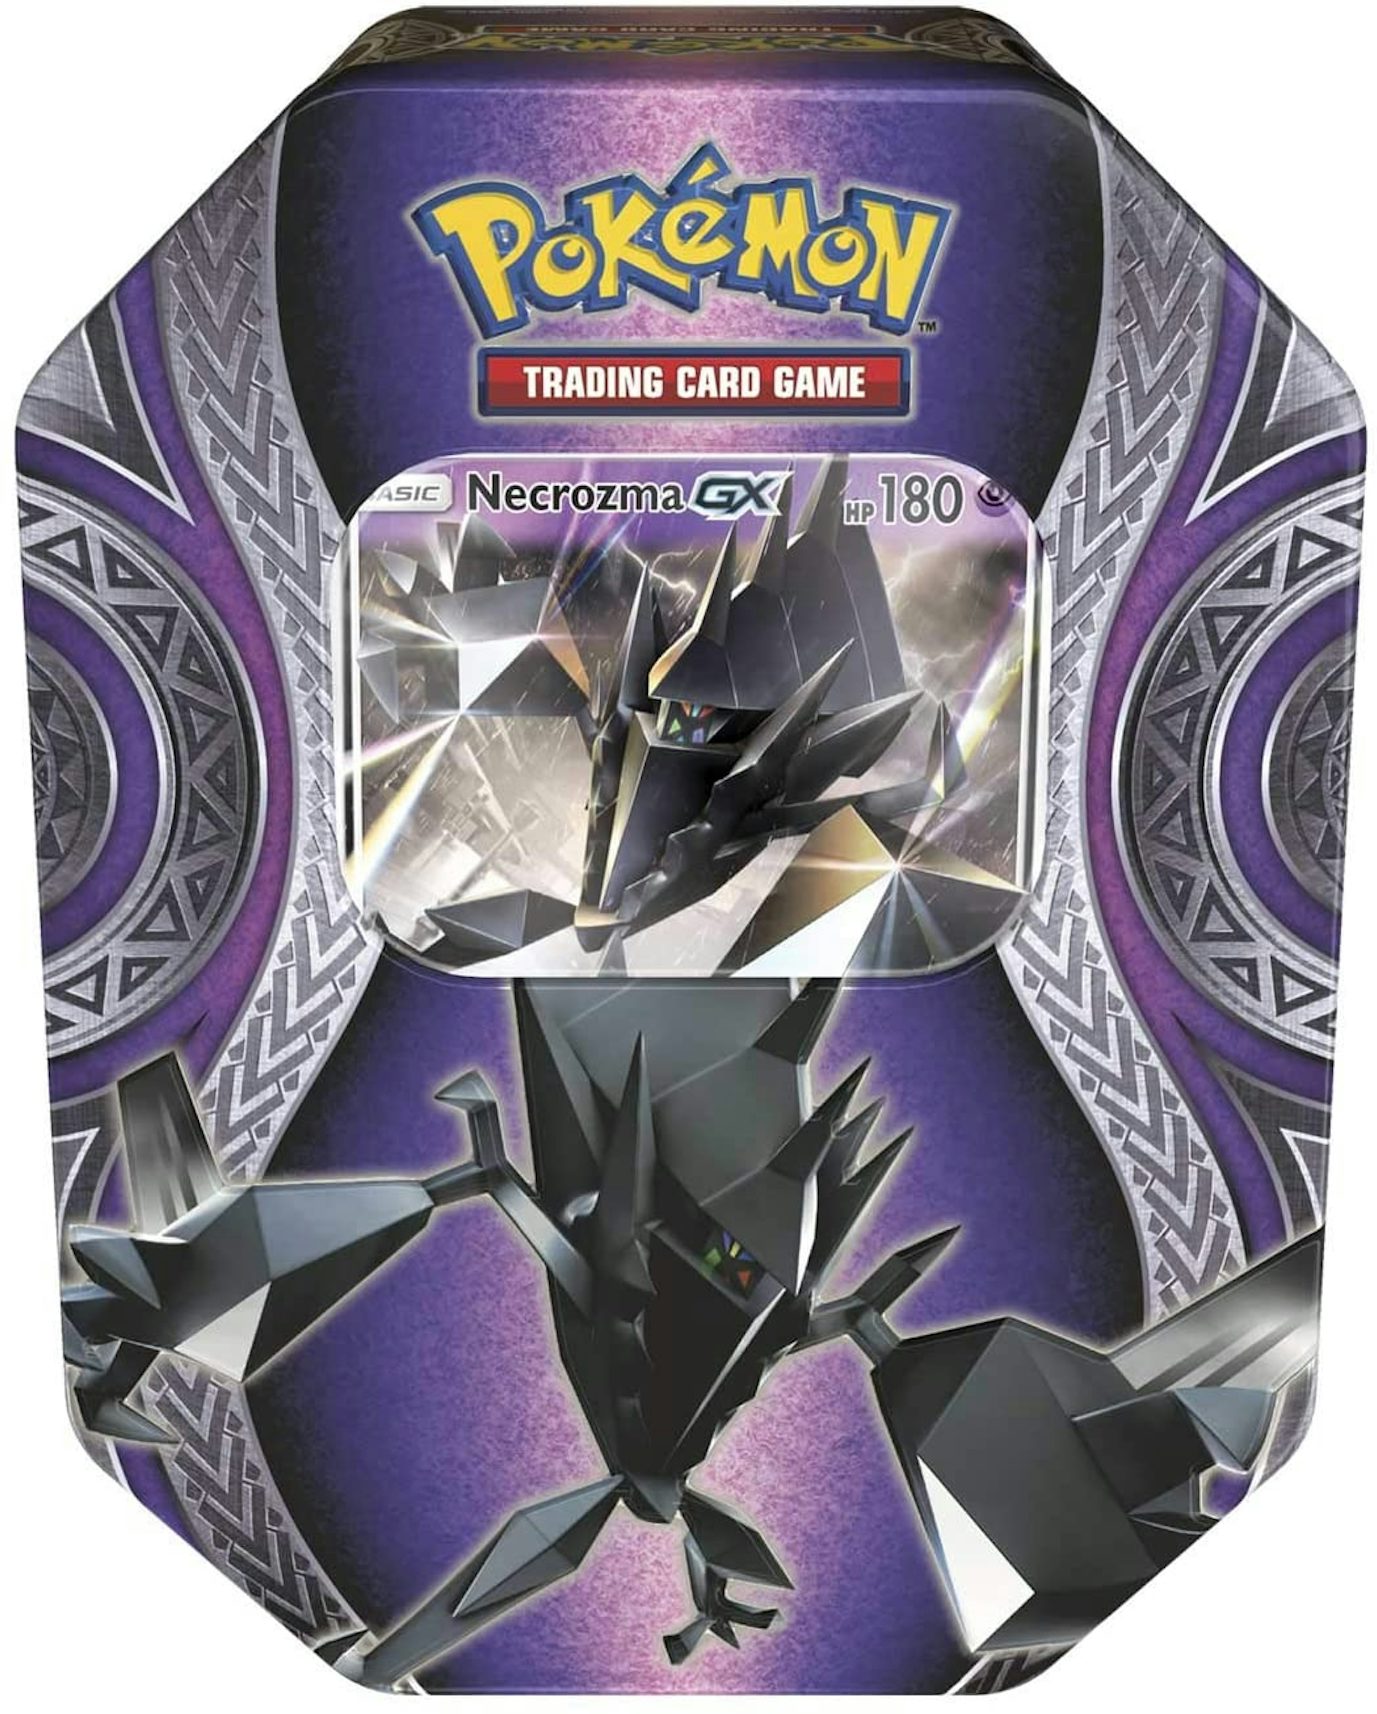  Pokémon TCG: Ho-Oh Gx Mysterious Powers Tin (New